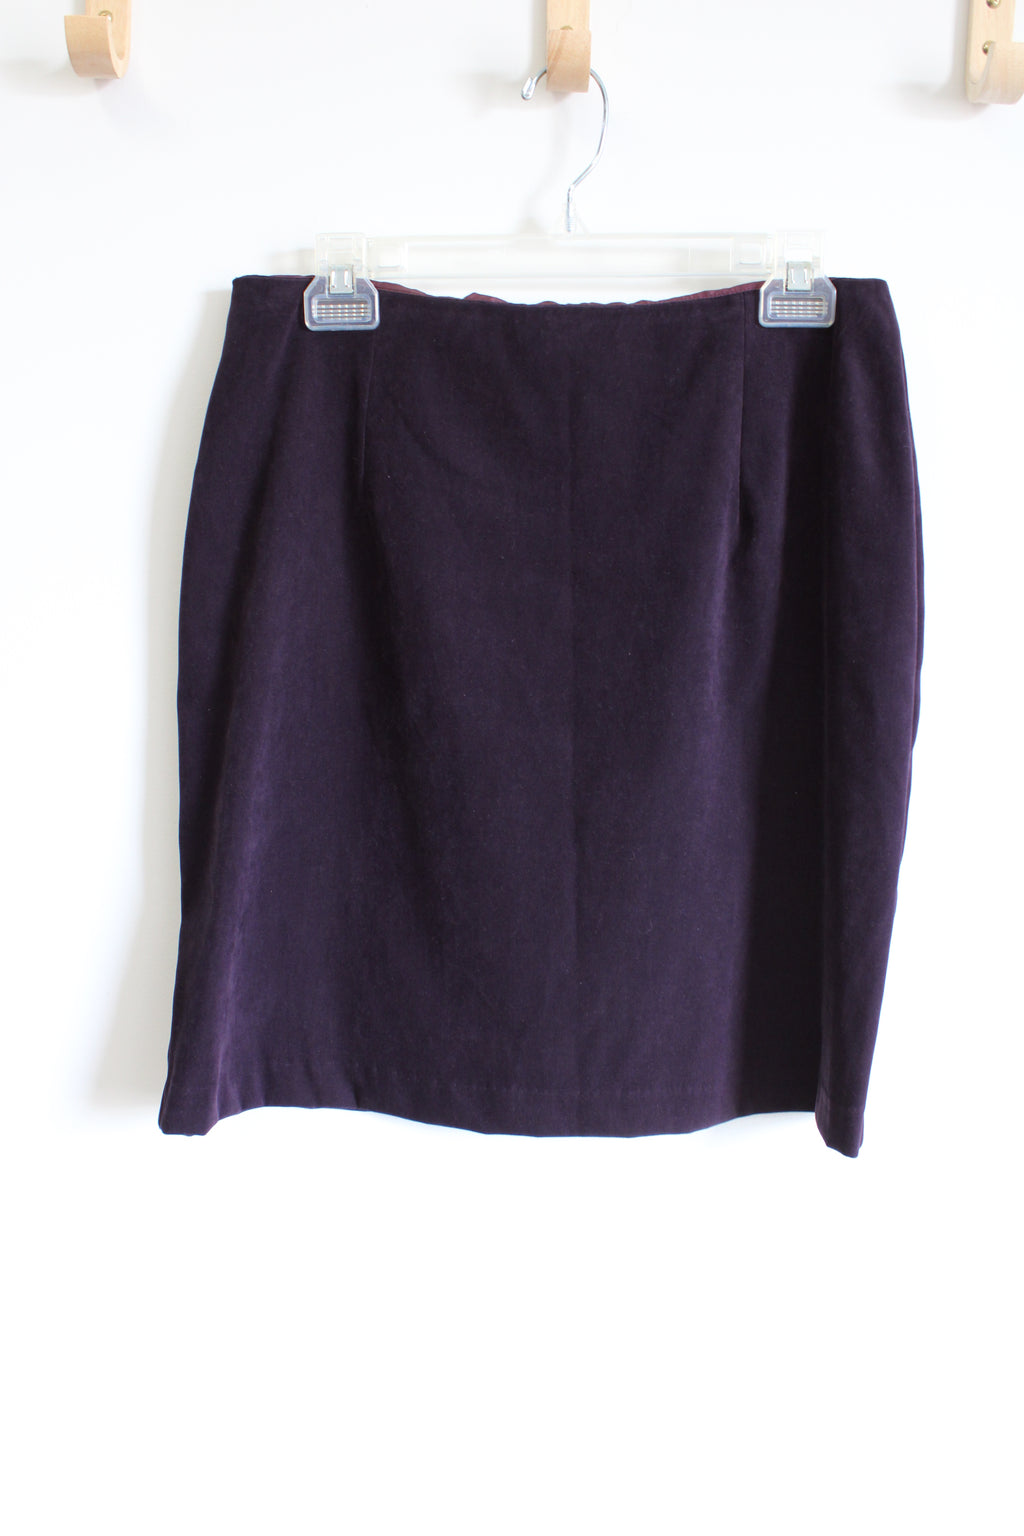 Dawn Joy Vintage Eggplant Purple Mini Sueded Skirt | 11/12